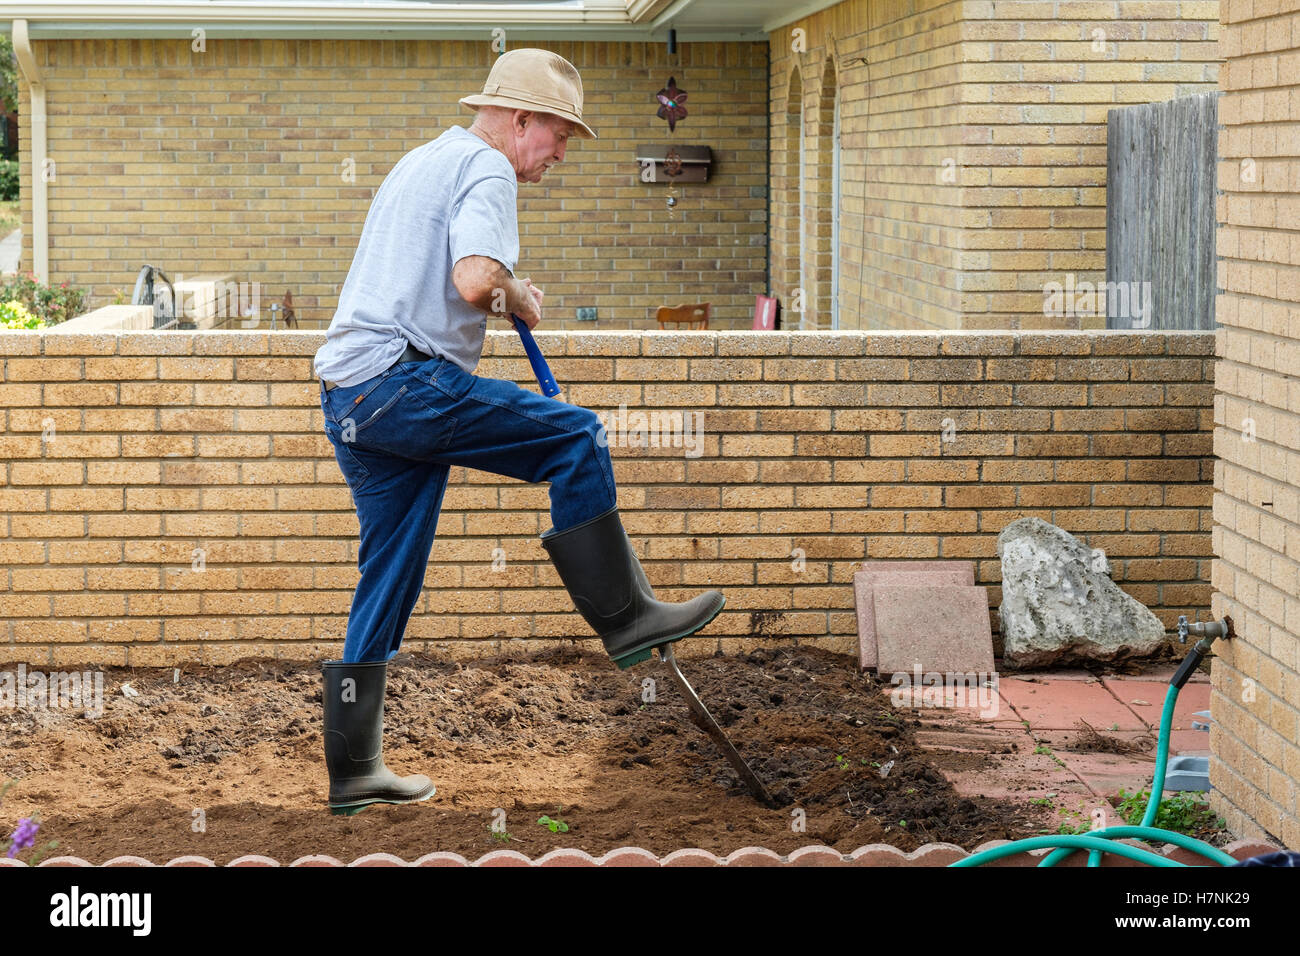 A 78 anno vecchio uomo caucasico scava fertilizzanti in un giardino fiorito spazio per la prossima primavera il plantings. Oklahoma, Stati Uniti d'America. Foto Stock